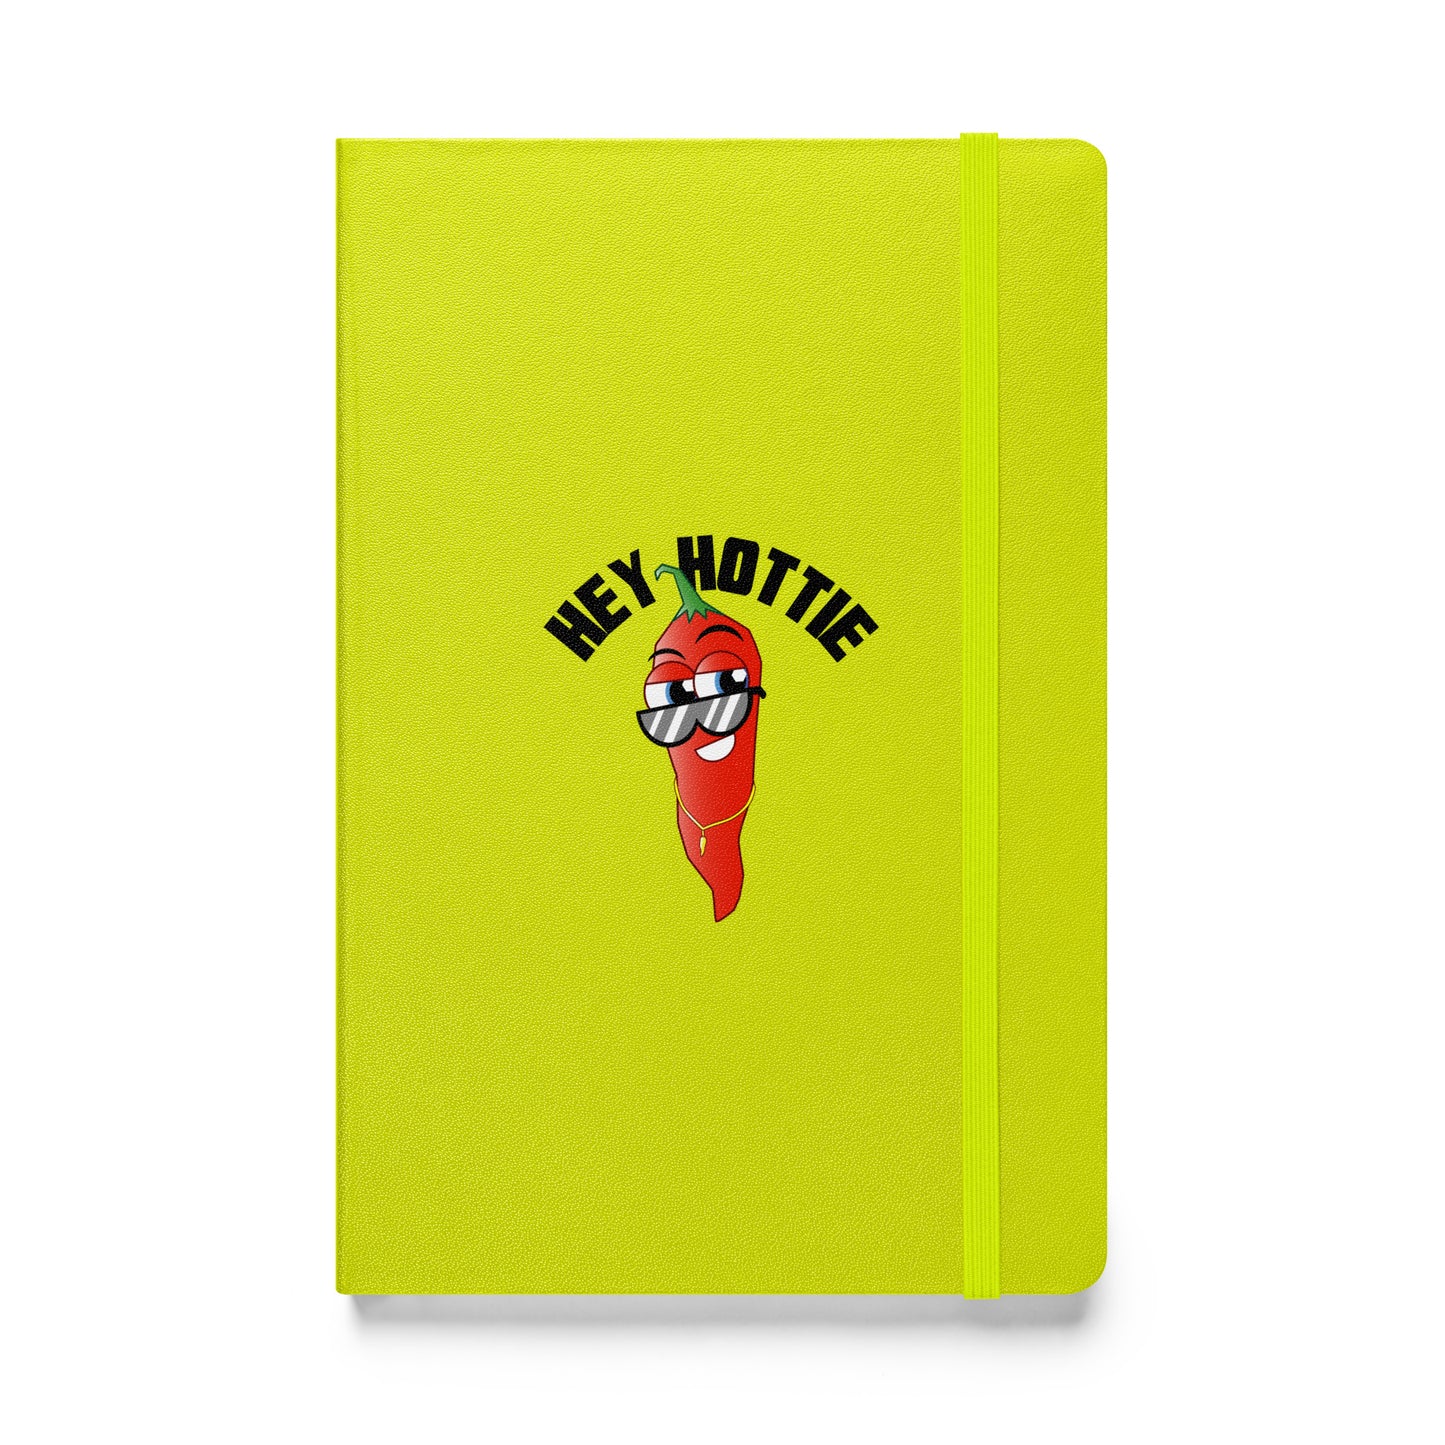 Hey Hottie Notebook